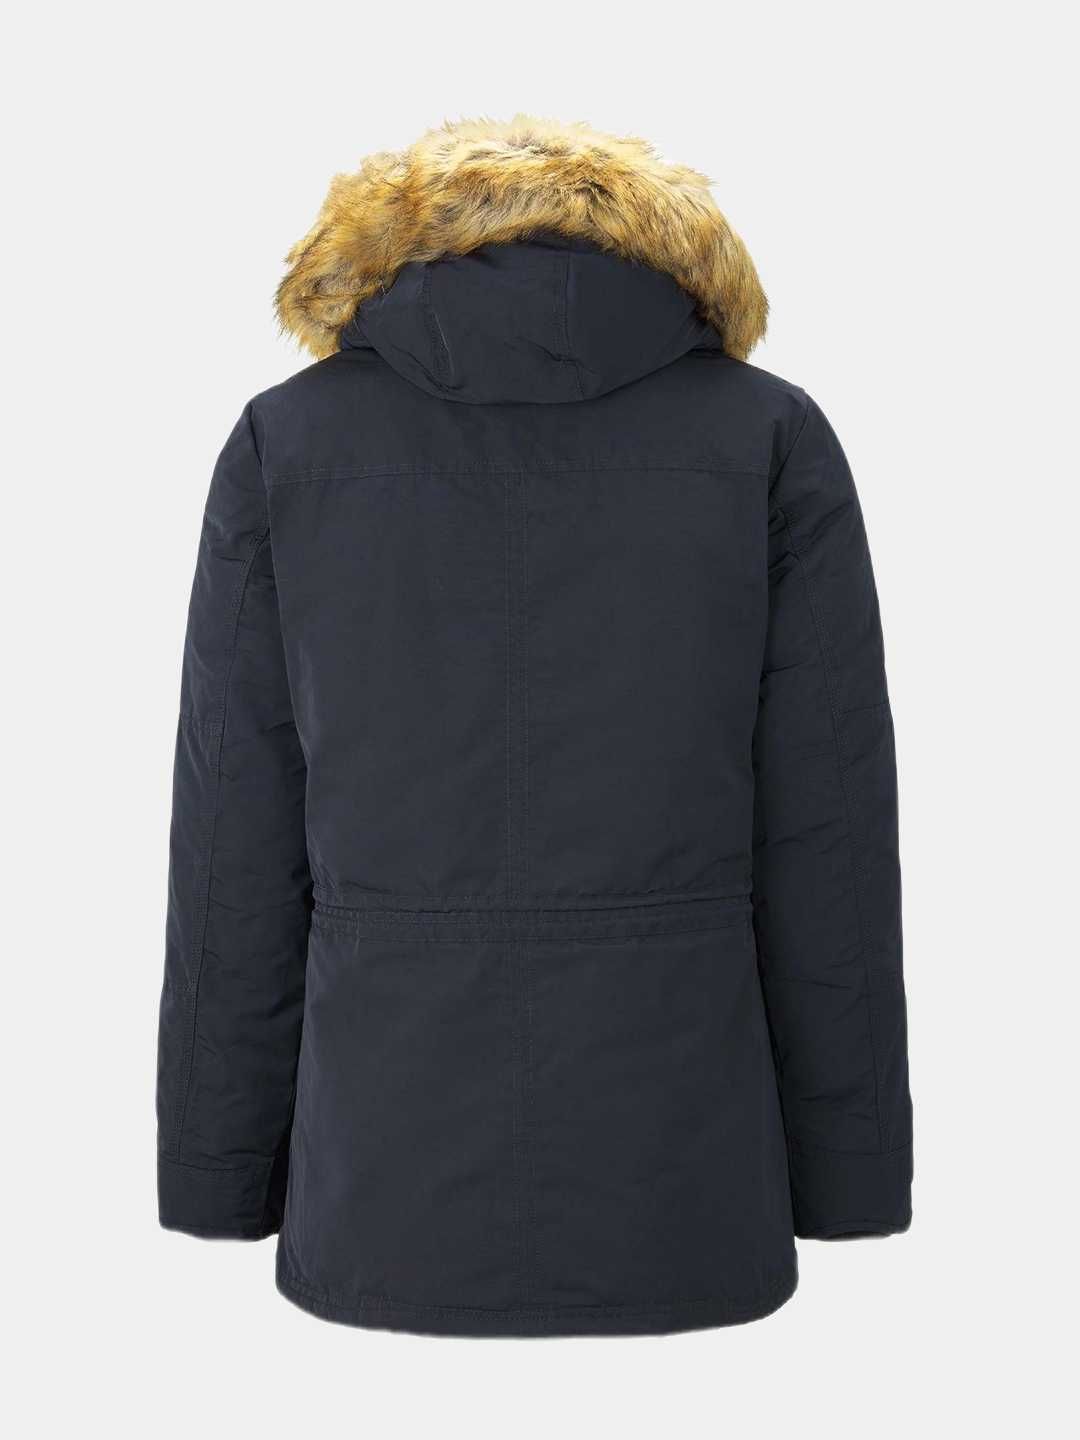 -40% Мужская зимняя куртка аляска Tom Tailor Sorona Aura [XL - 3XL]